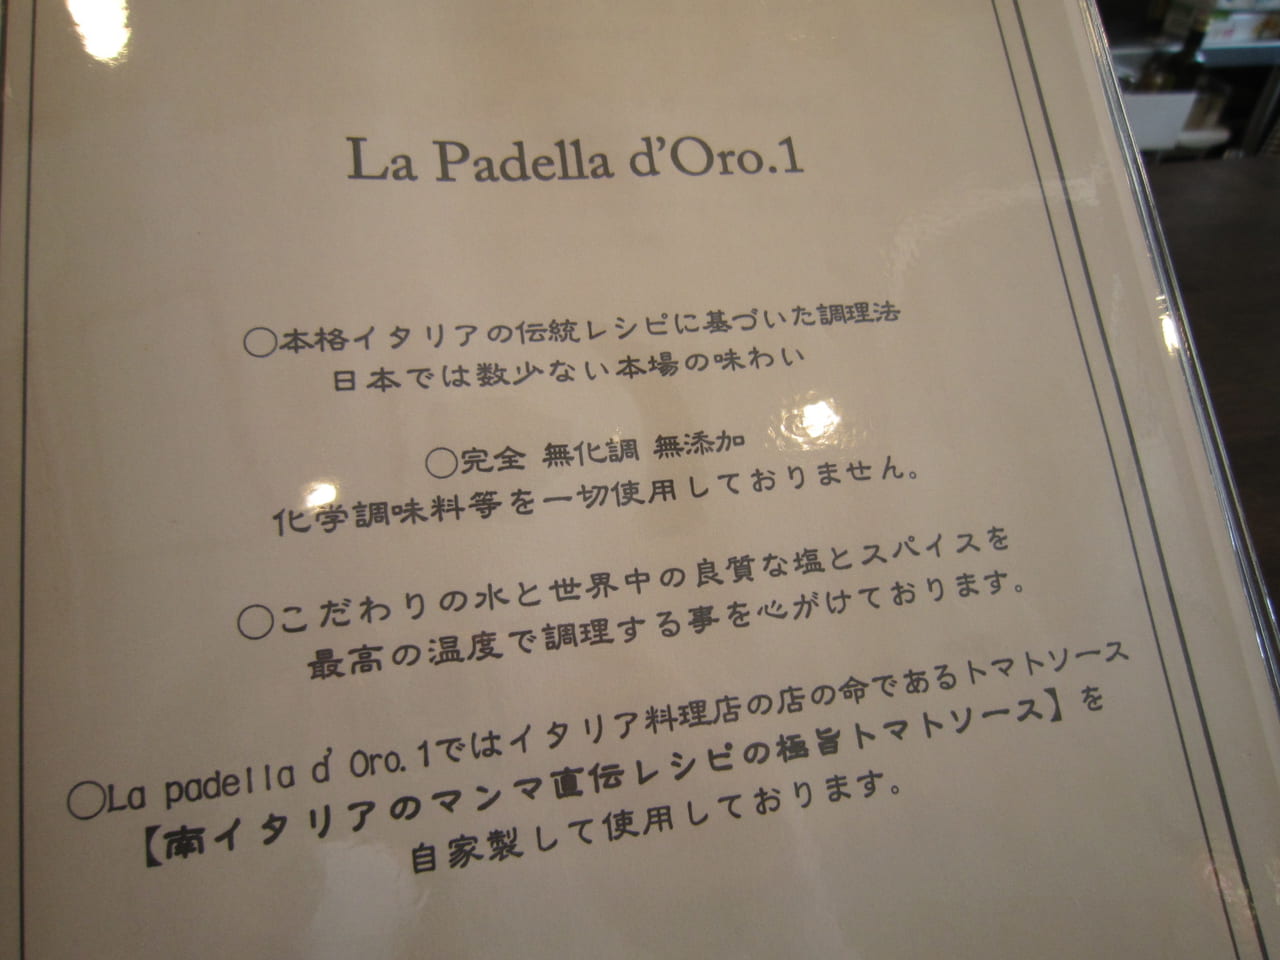 La Padella d'Oro.1-menu